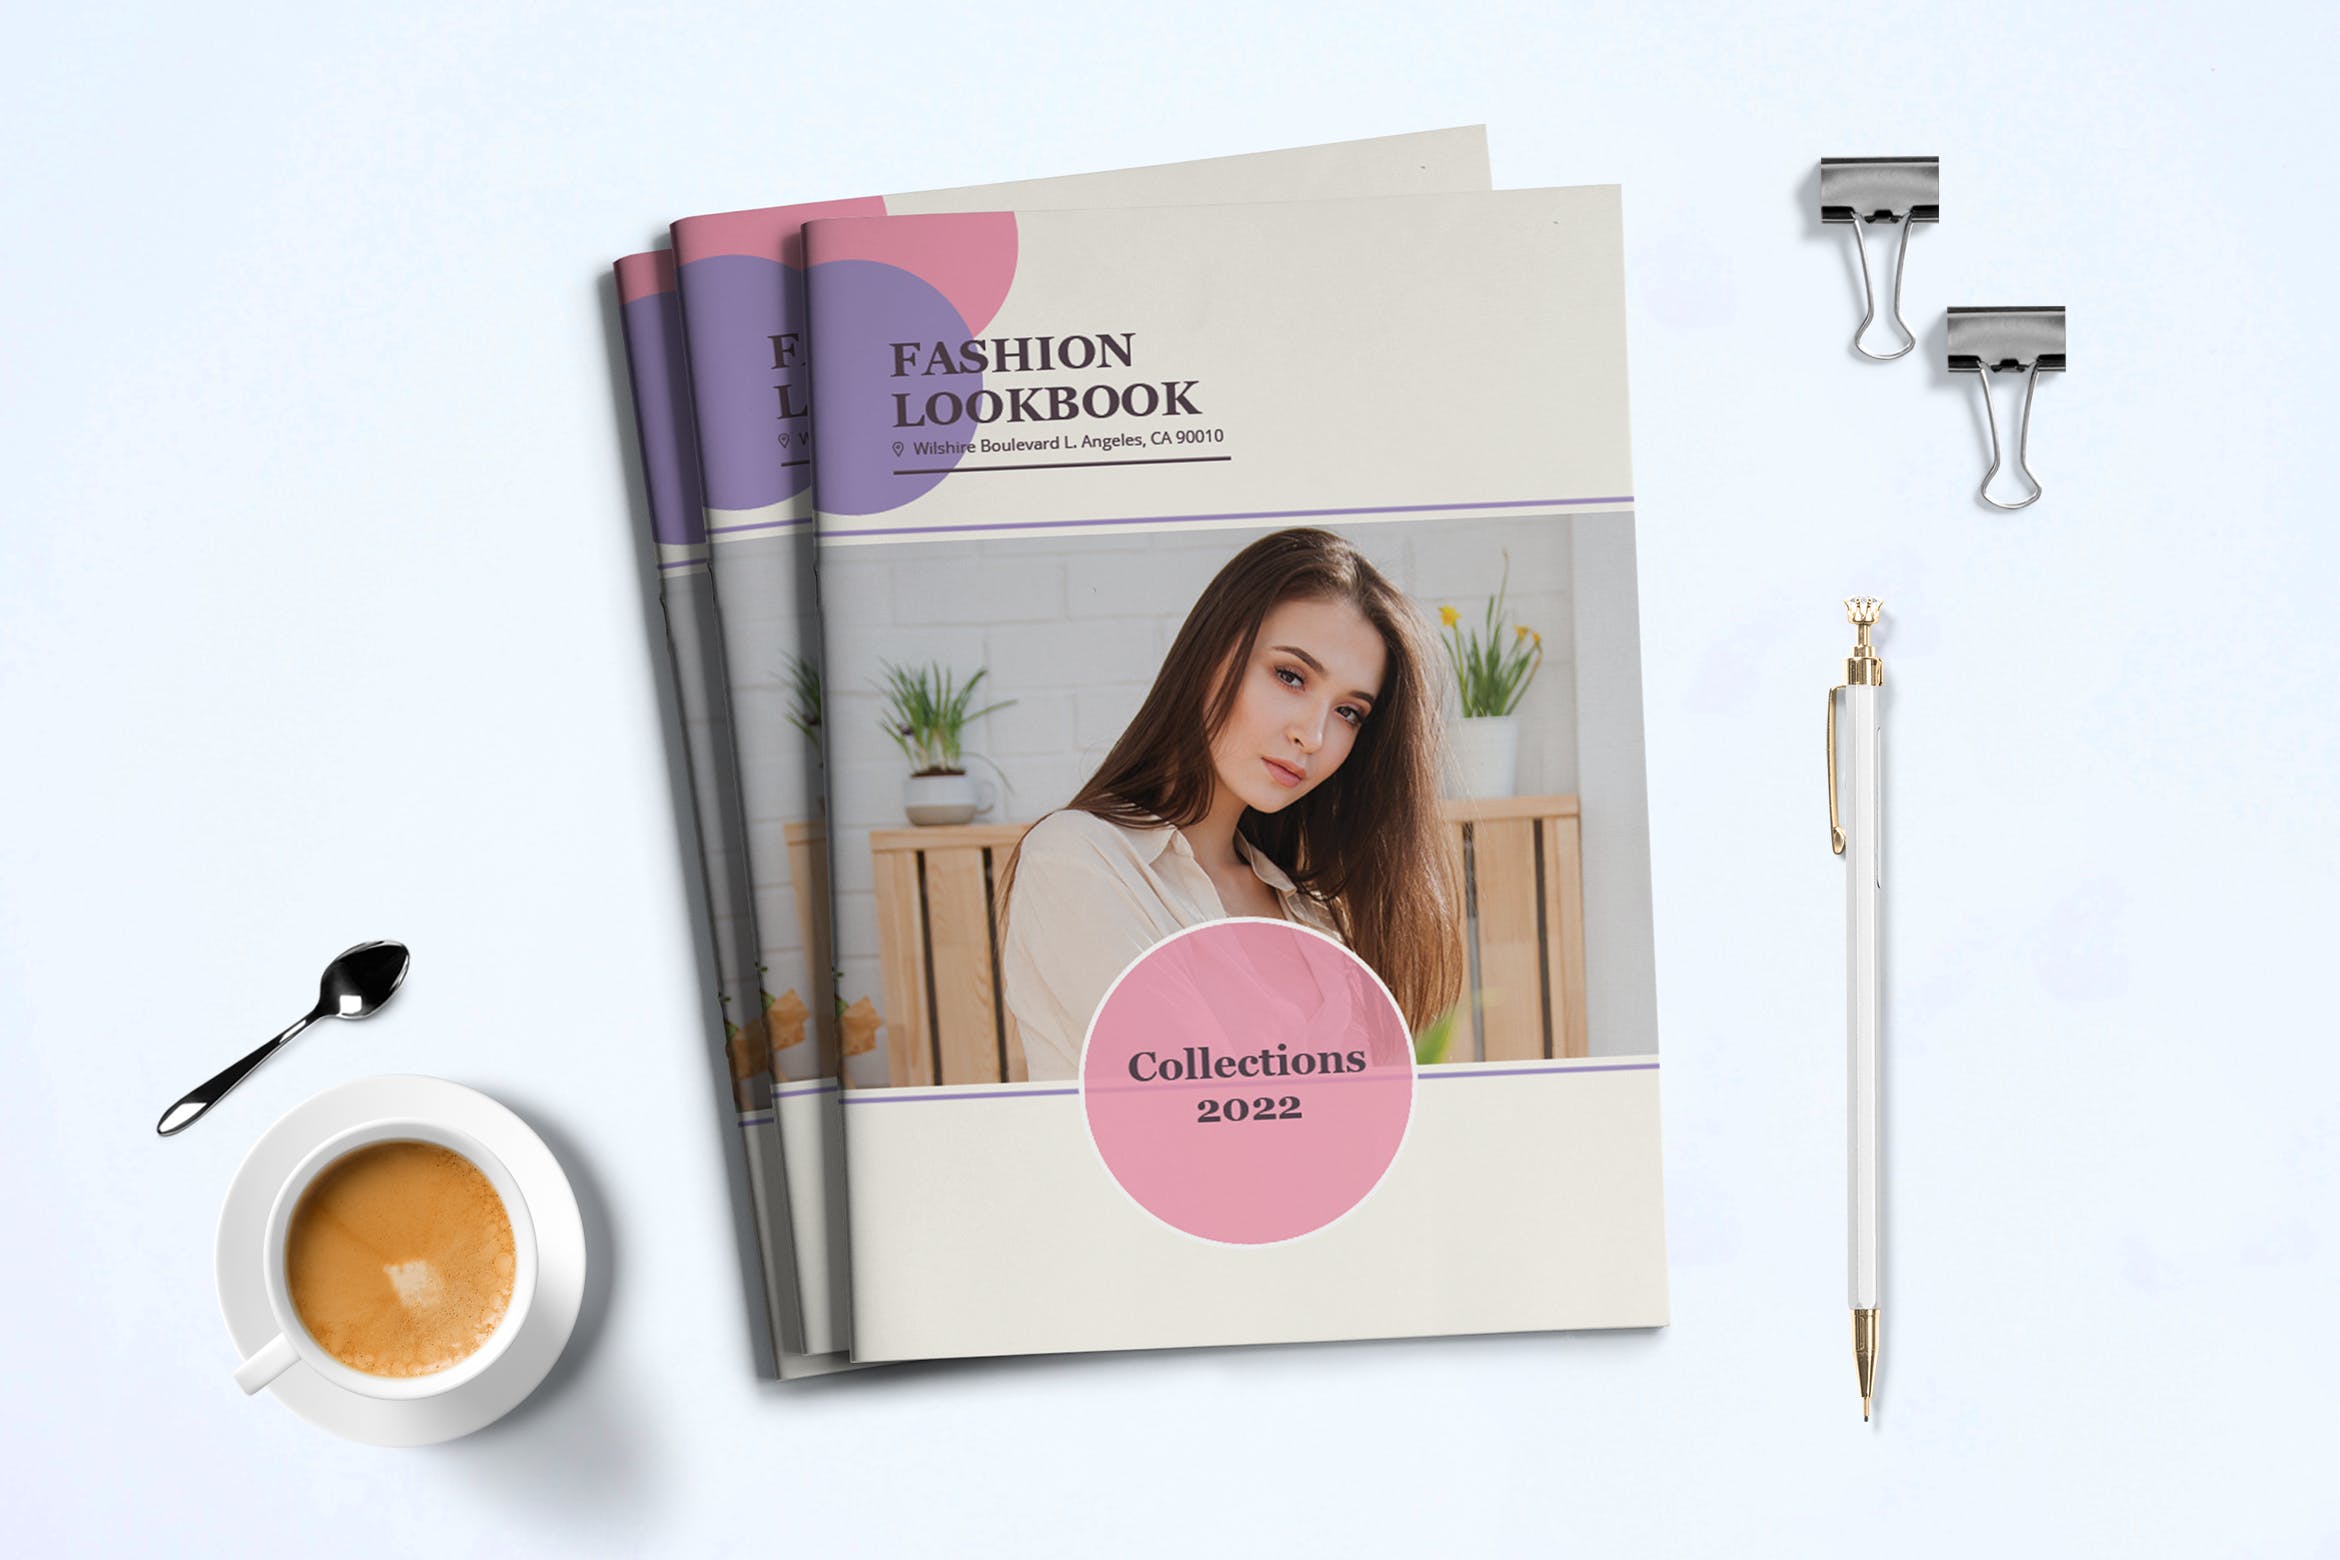 时装订货画册/新品上市产品素材中国精选目录设计模板v3 Fashion Lookbook Template插图